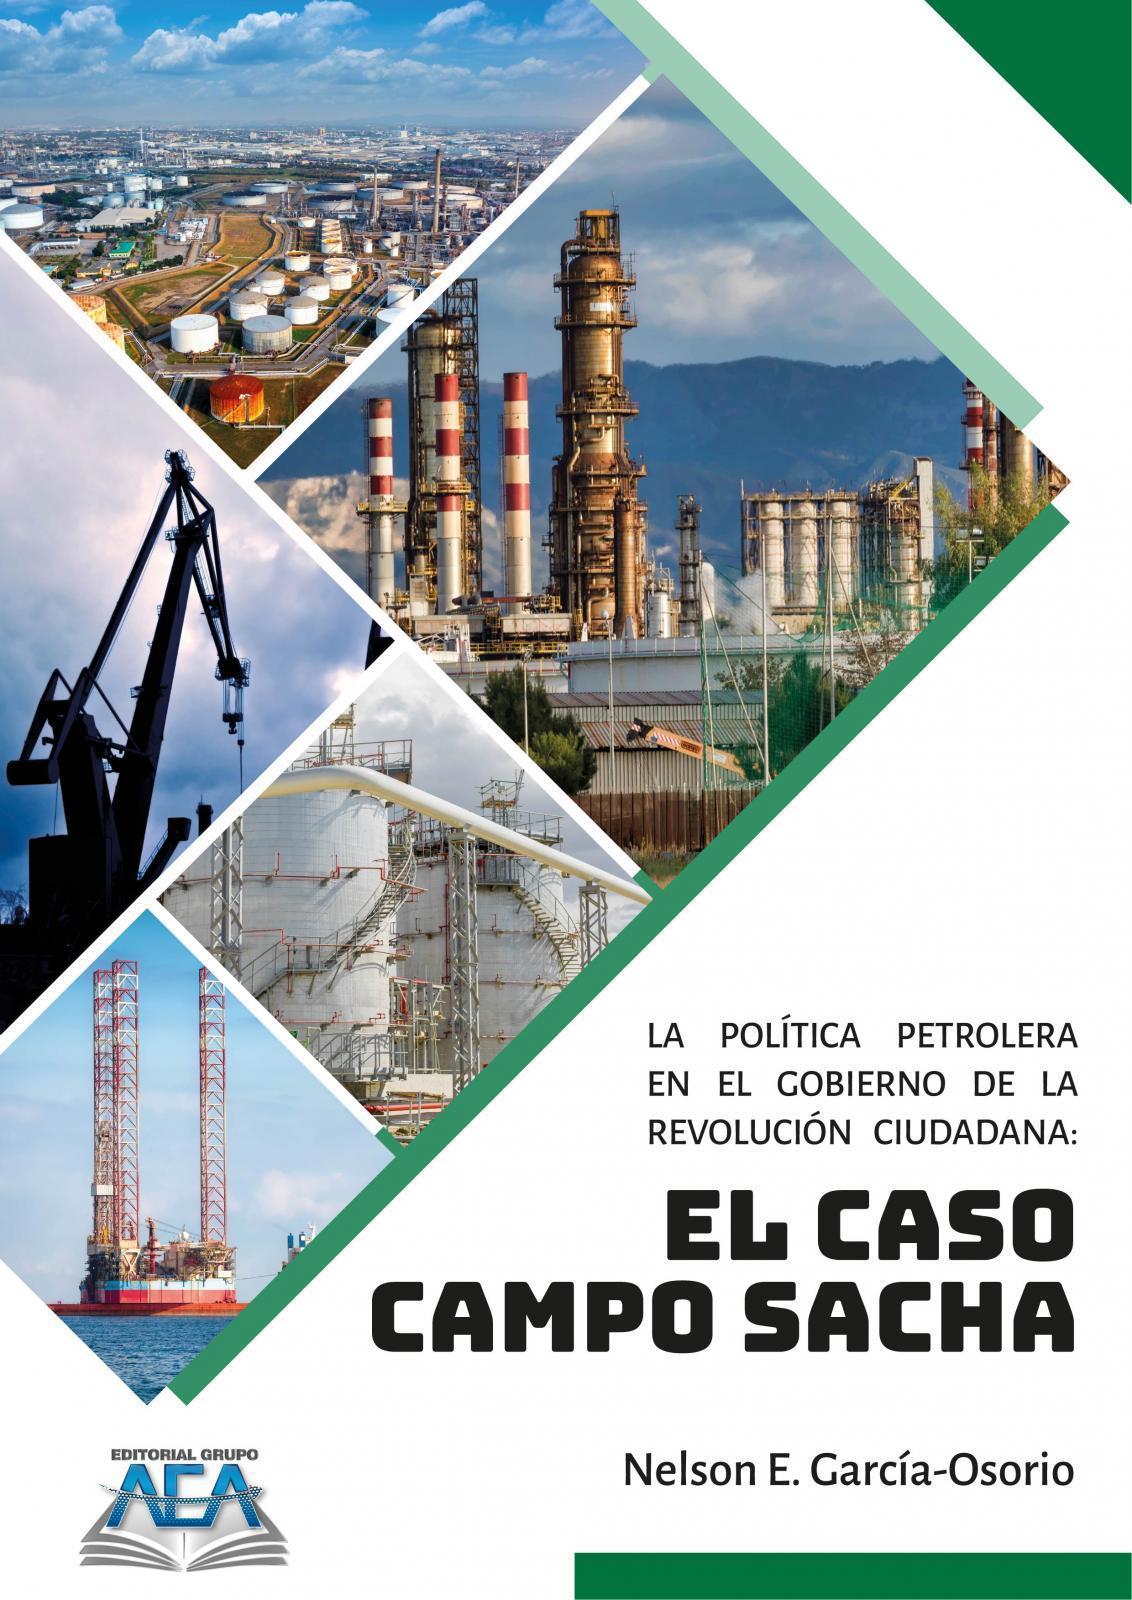 Read more about La política petrolera en el gobierno de la revolución ciudadana: El caso del Campo Sacha